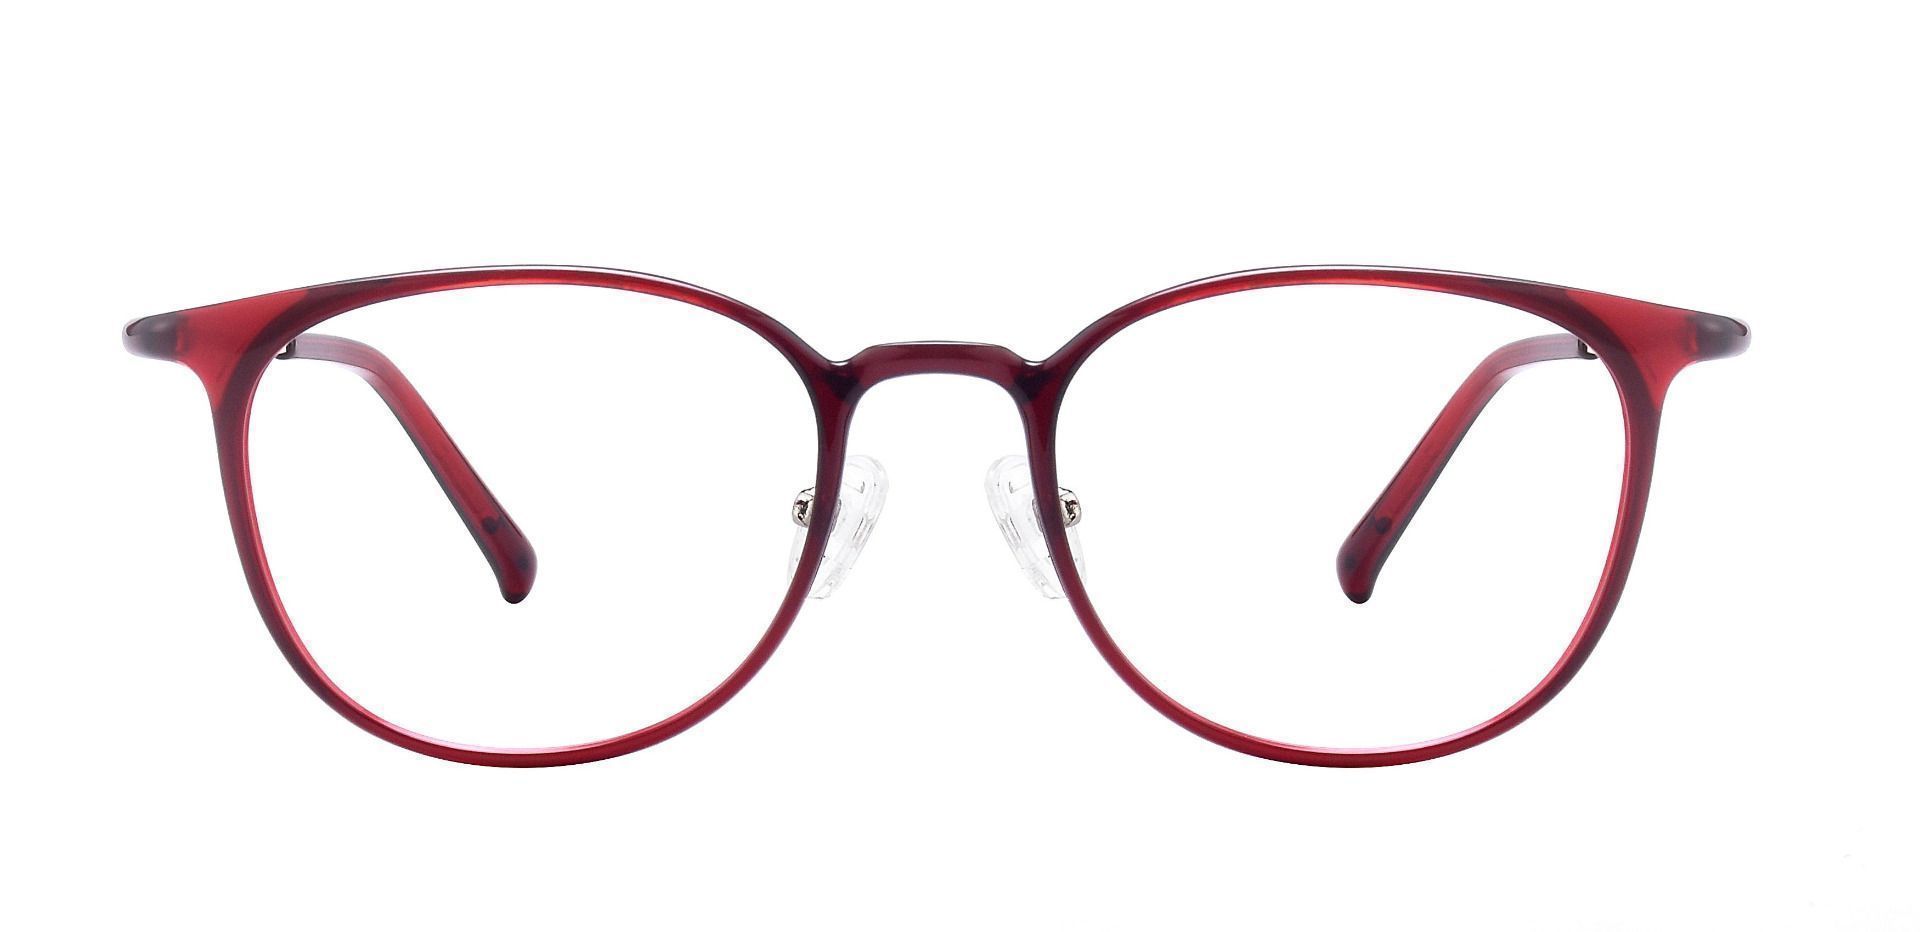 Stanton Oval Prescription Glasses - Red | Women's Eyeglasses | Payne ...